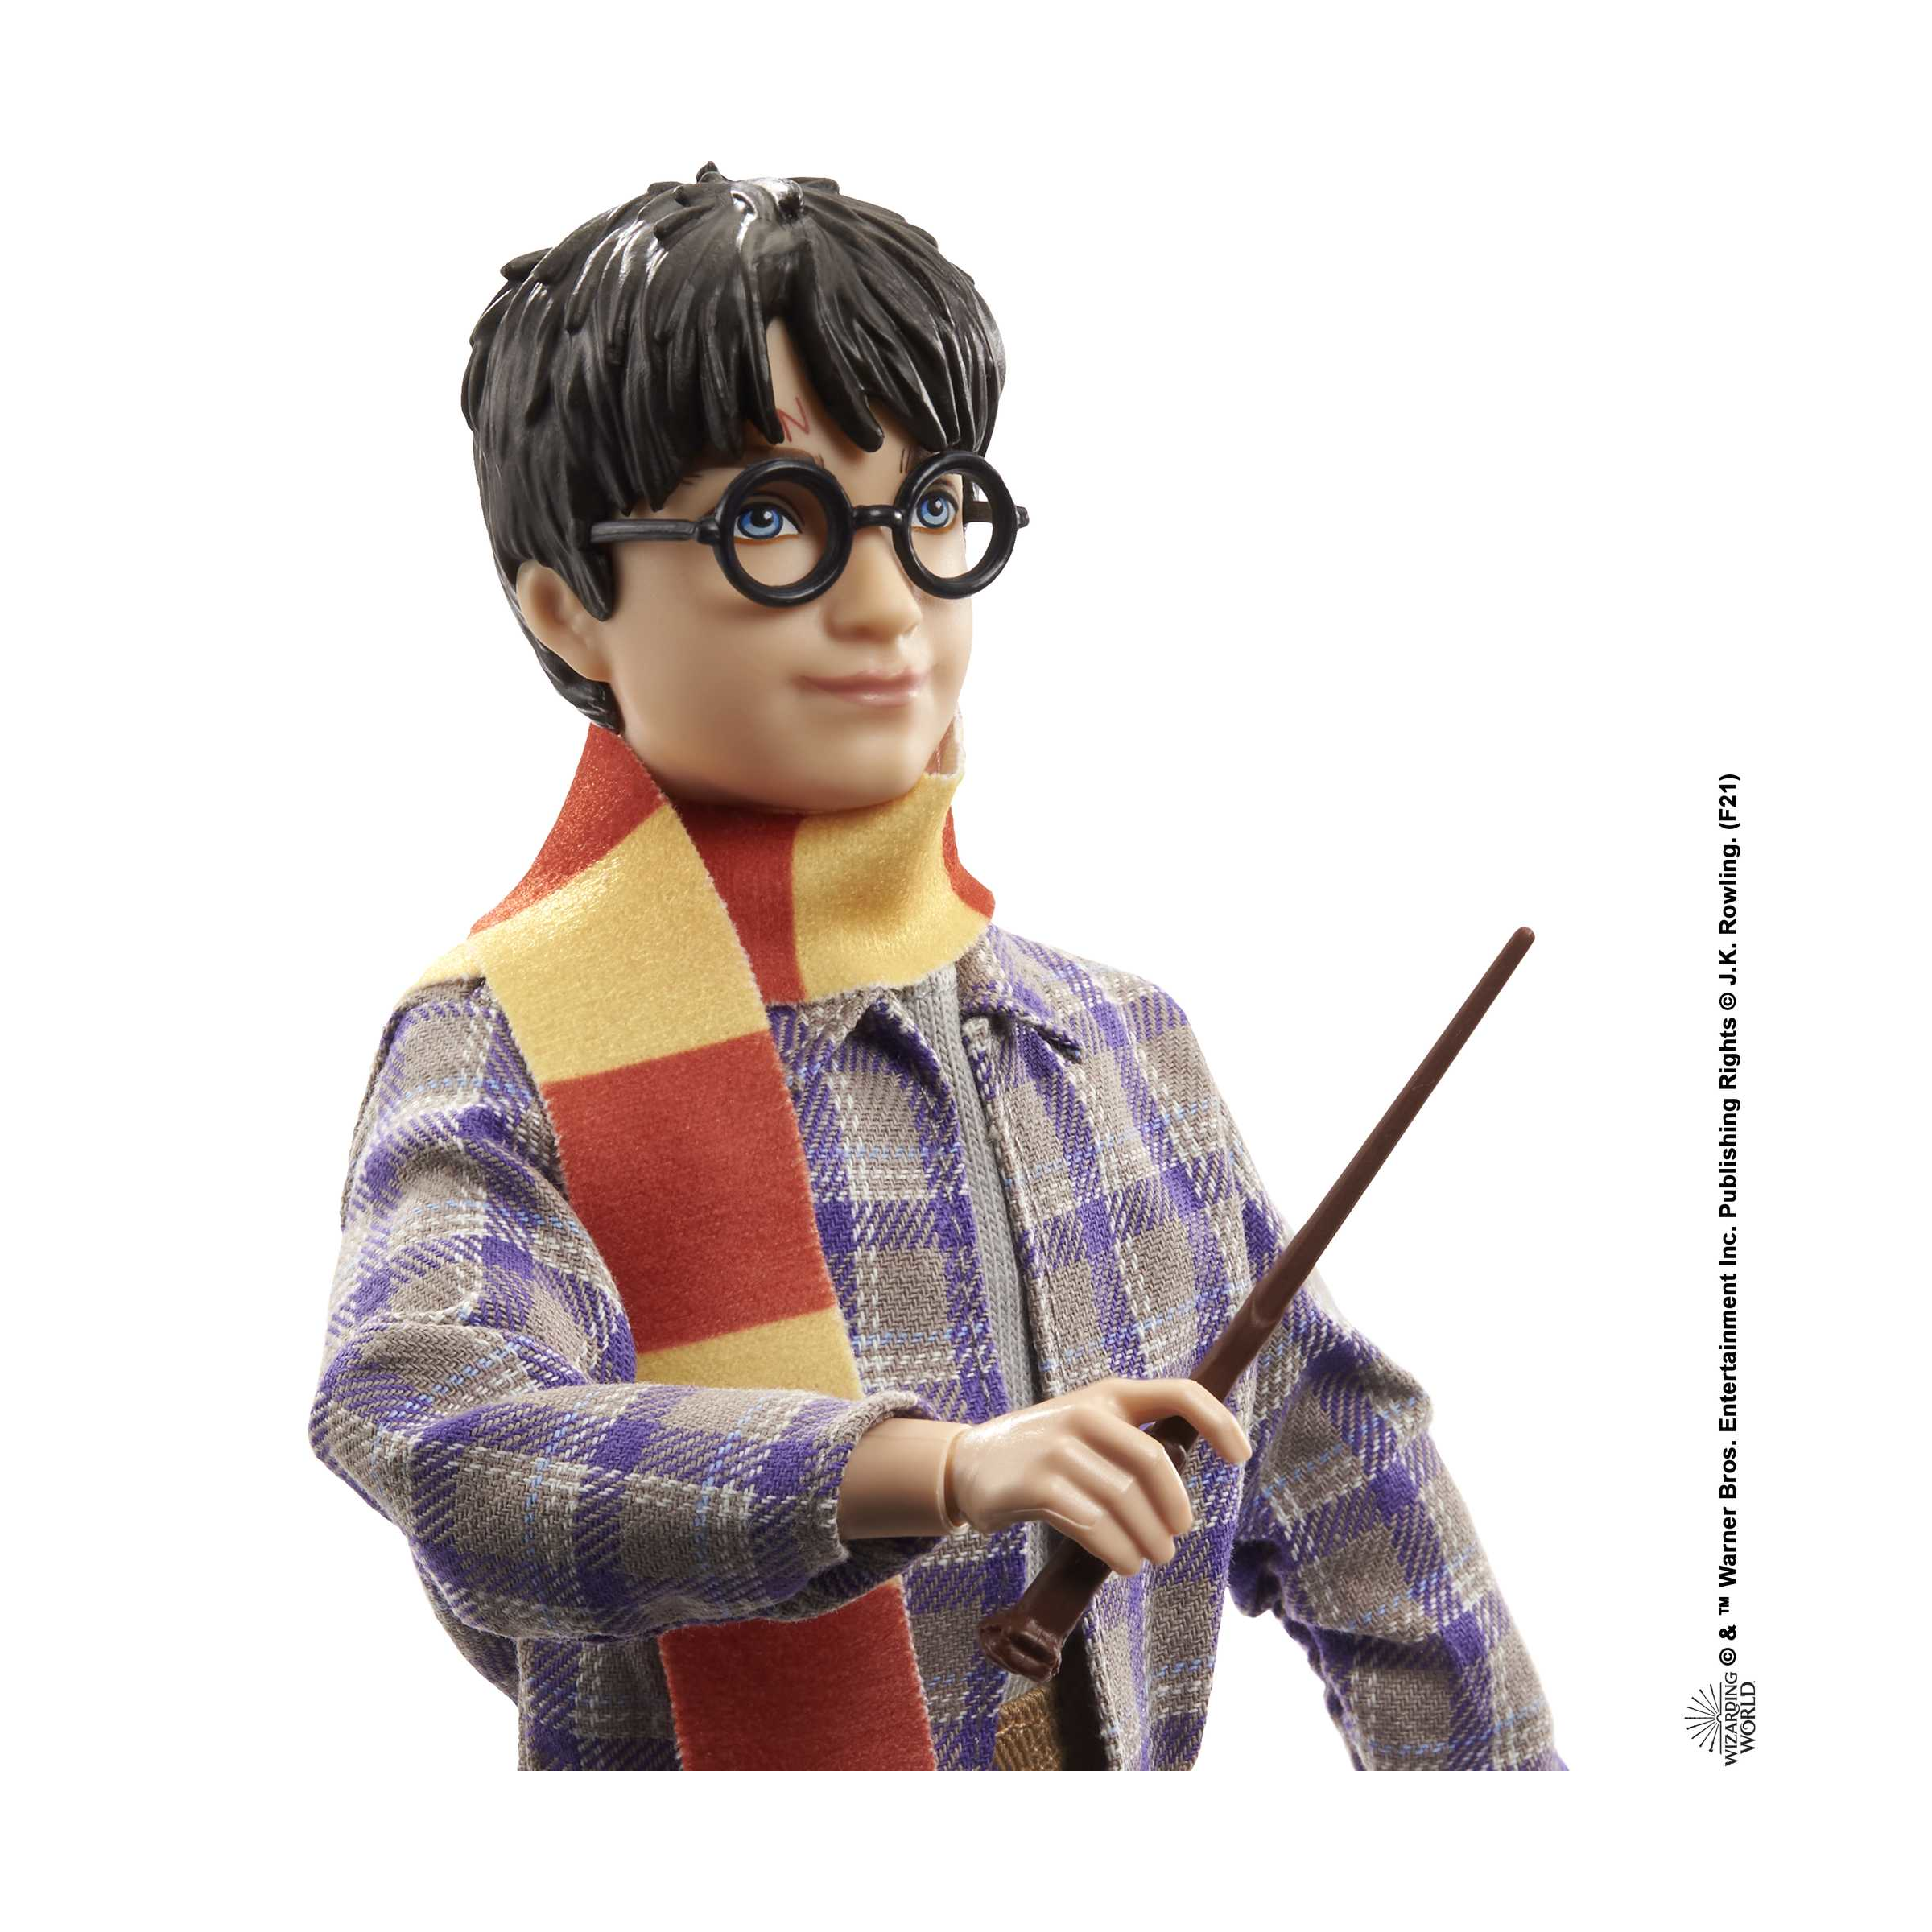 Harry potter, personaggio harry binario 9 3/4 da collezione con edvige e accessori; giocattolo per bambini 6+ anni, gxw31 - Harry Potter